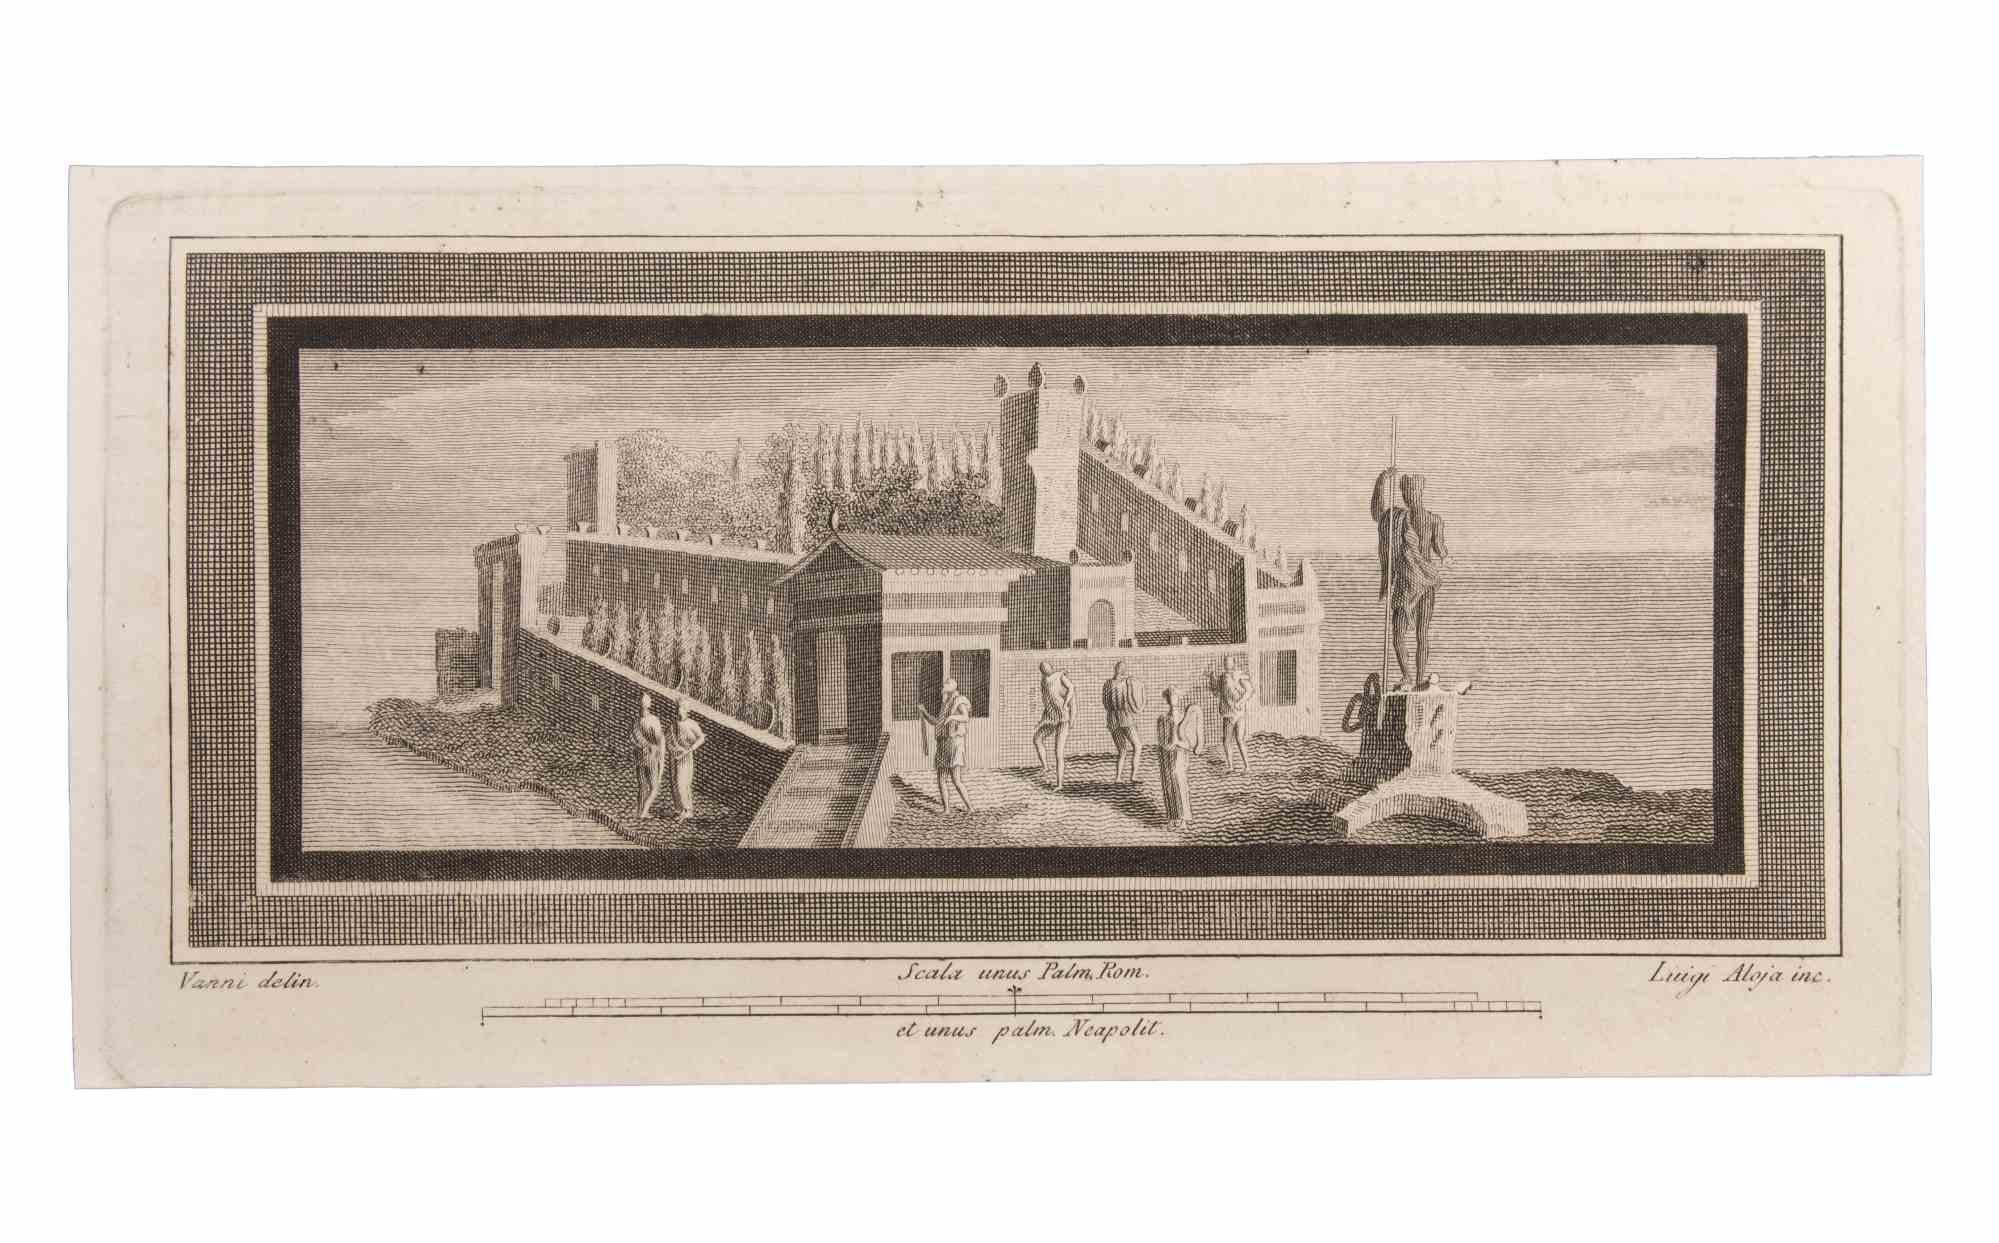 Seascapes With Monument and Figures ist eine Radierung realisiert von  Luigi Aloja (1783-1837).

Die Radierung gehört zu der Druckserie "Antiquities of Herculaneum Exposed" (Originaltitel: "Le Antichità di Ercolano Esposte"), einem achtbändigen Band